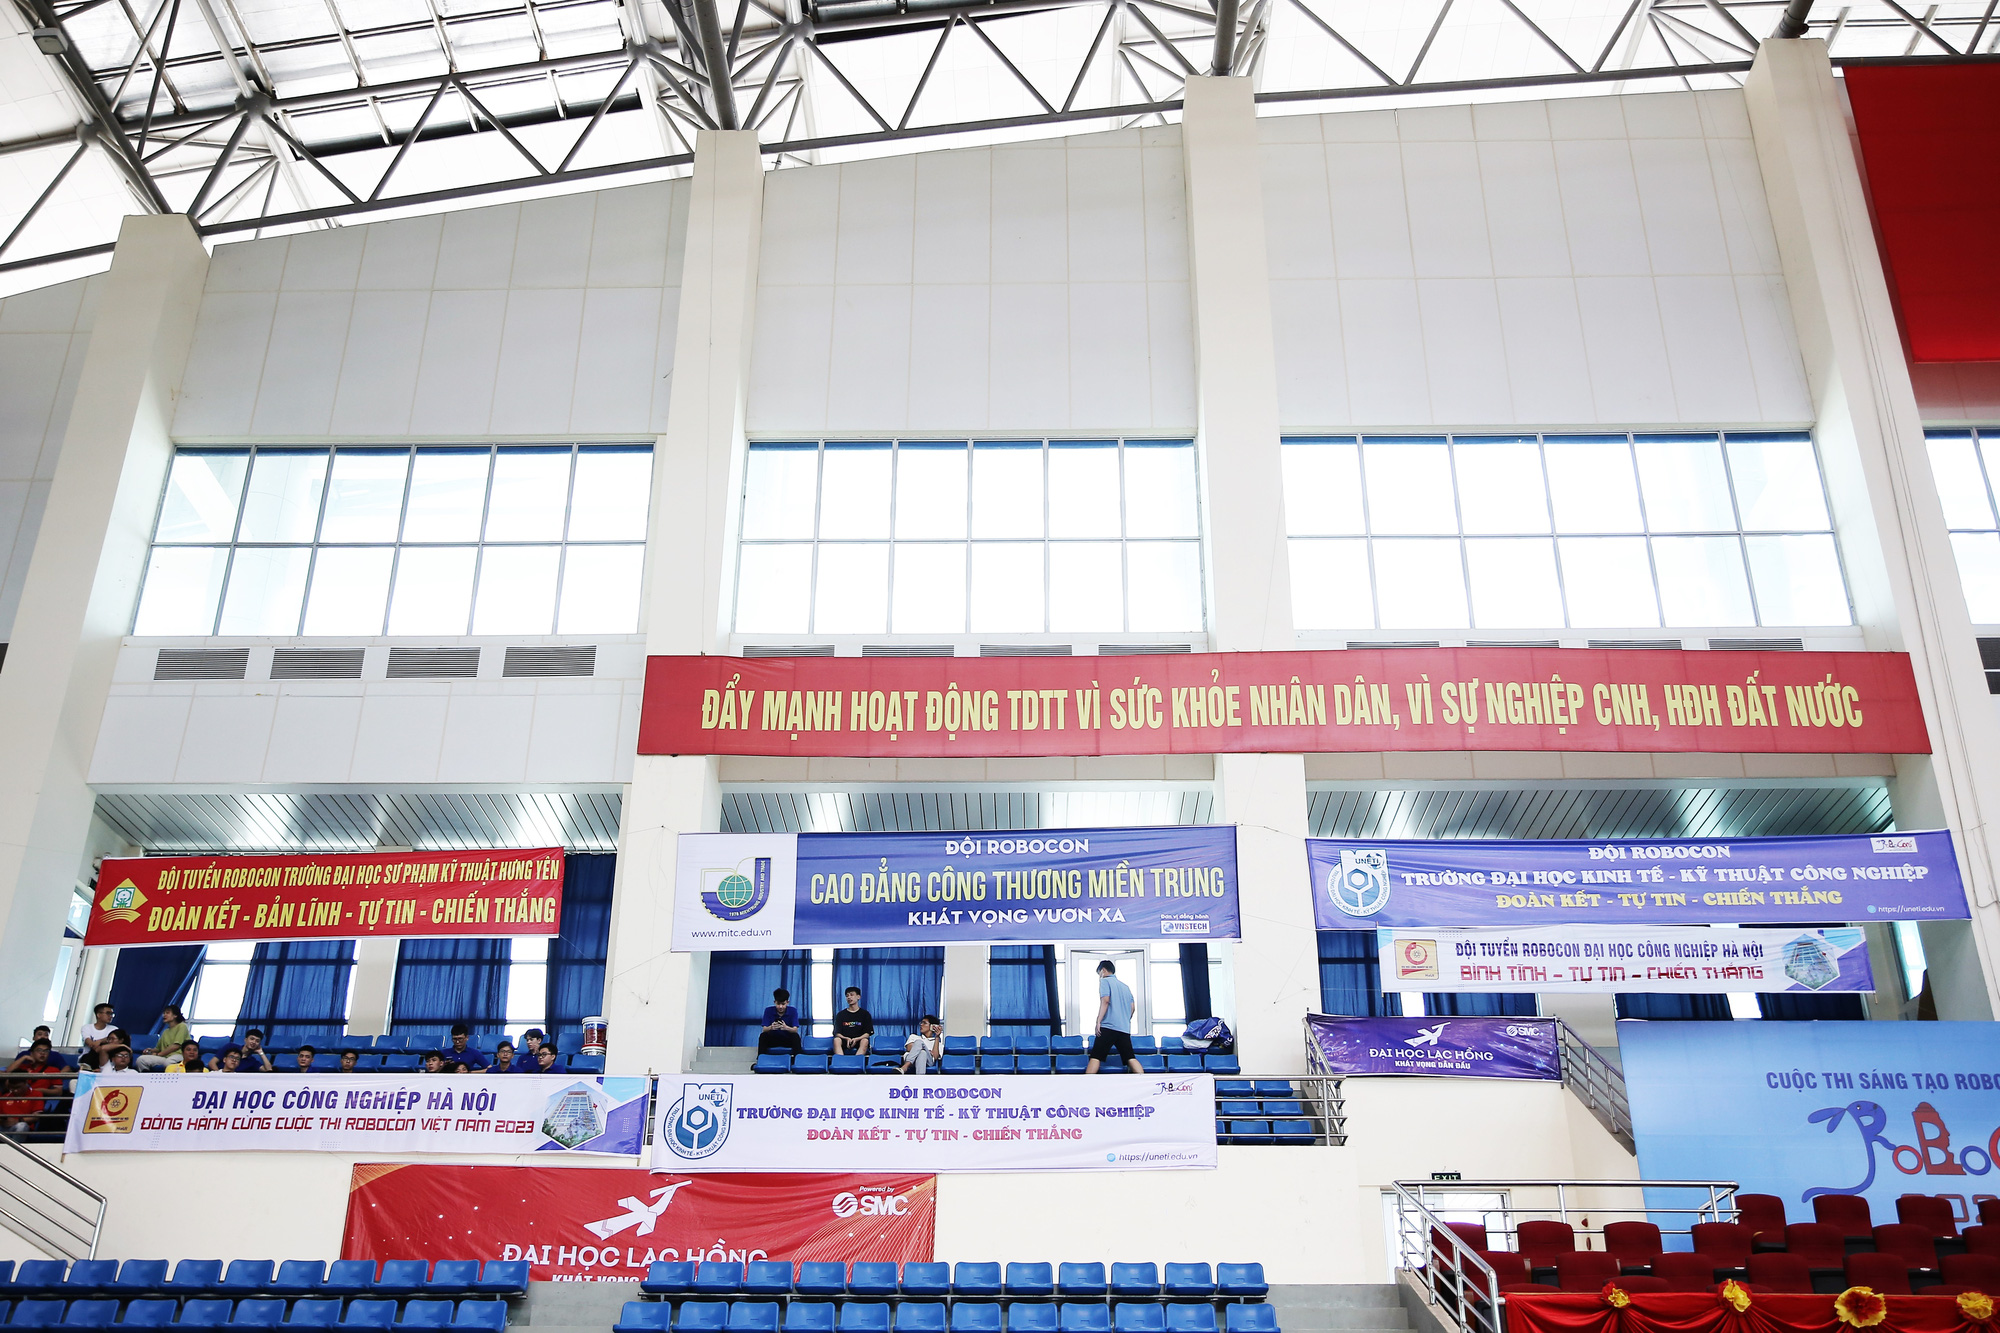 Robocon Việt Nam 2023: Sôi động không khí buổi thử sân tại vòng chung kết